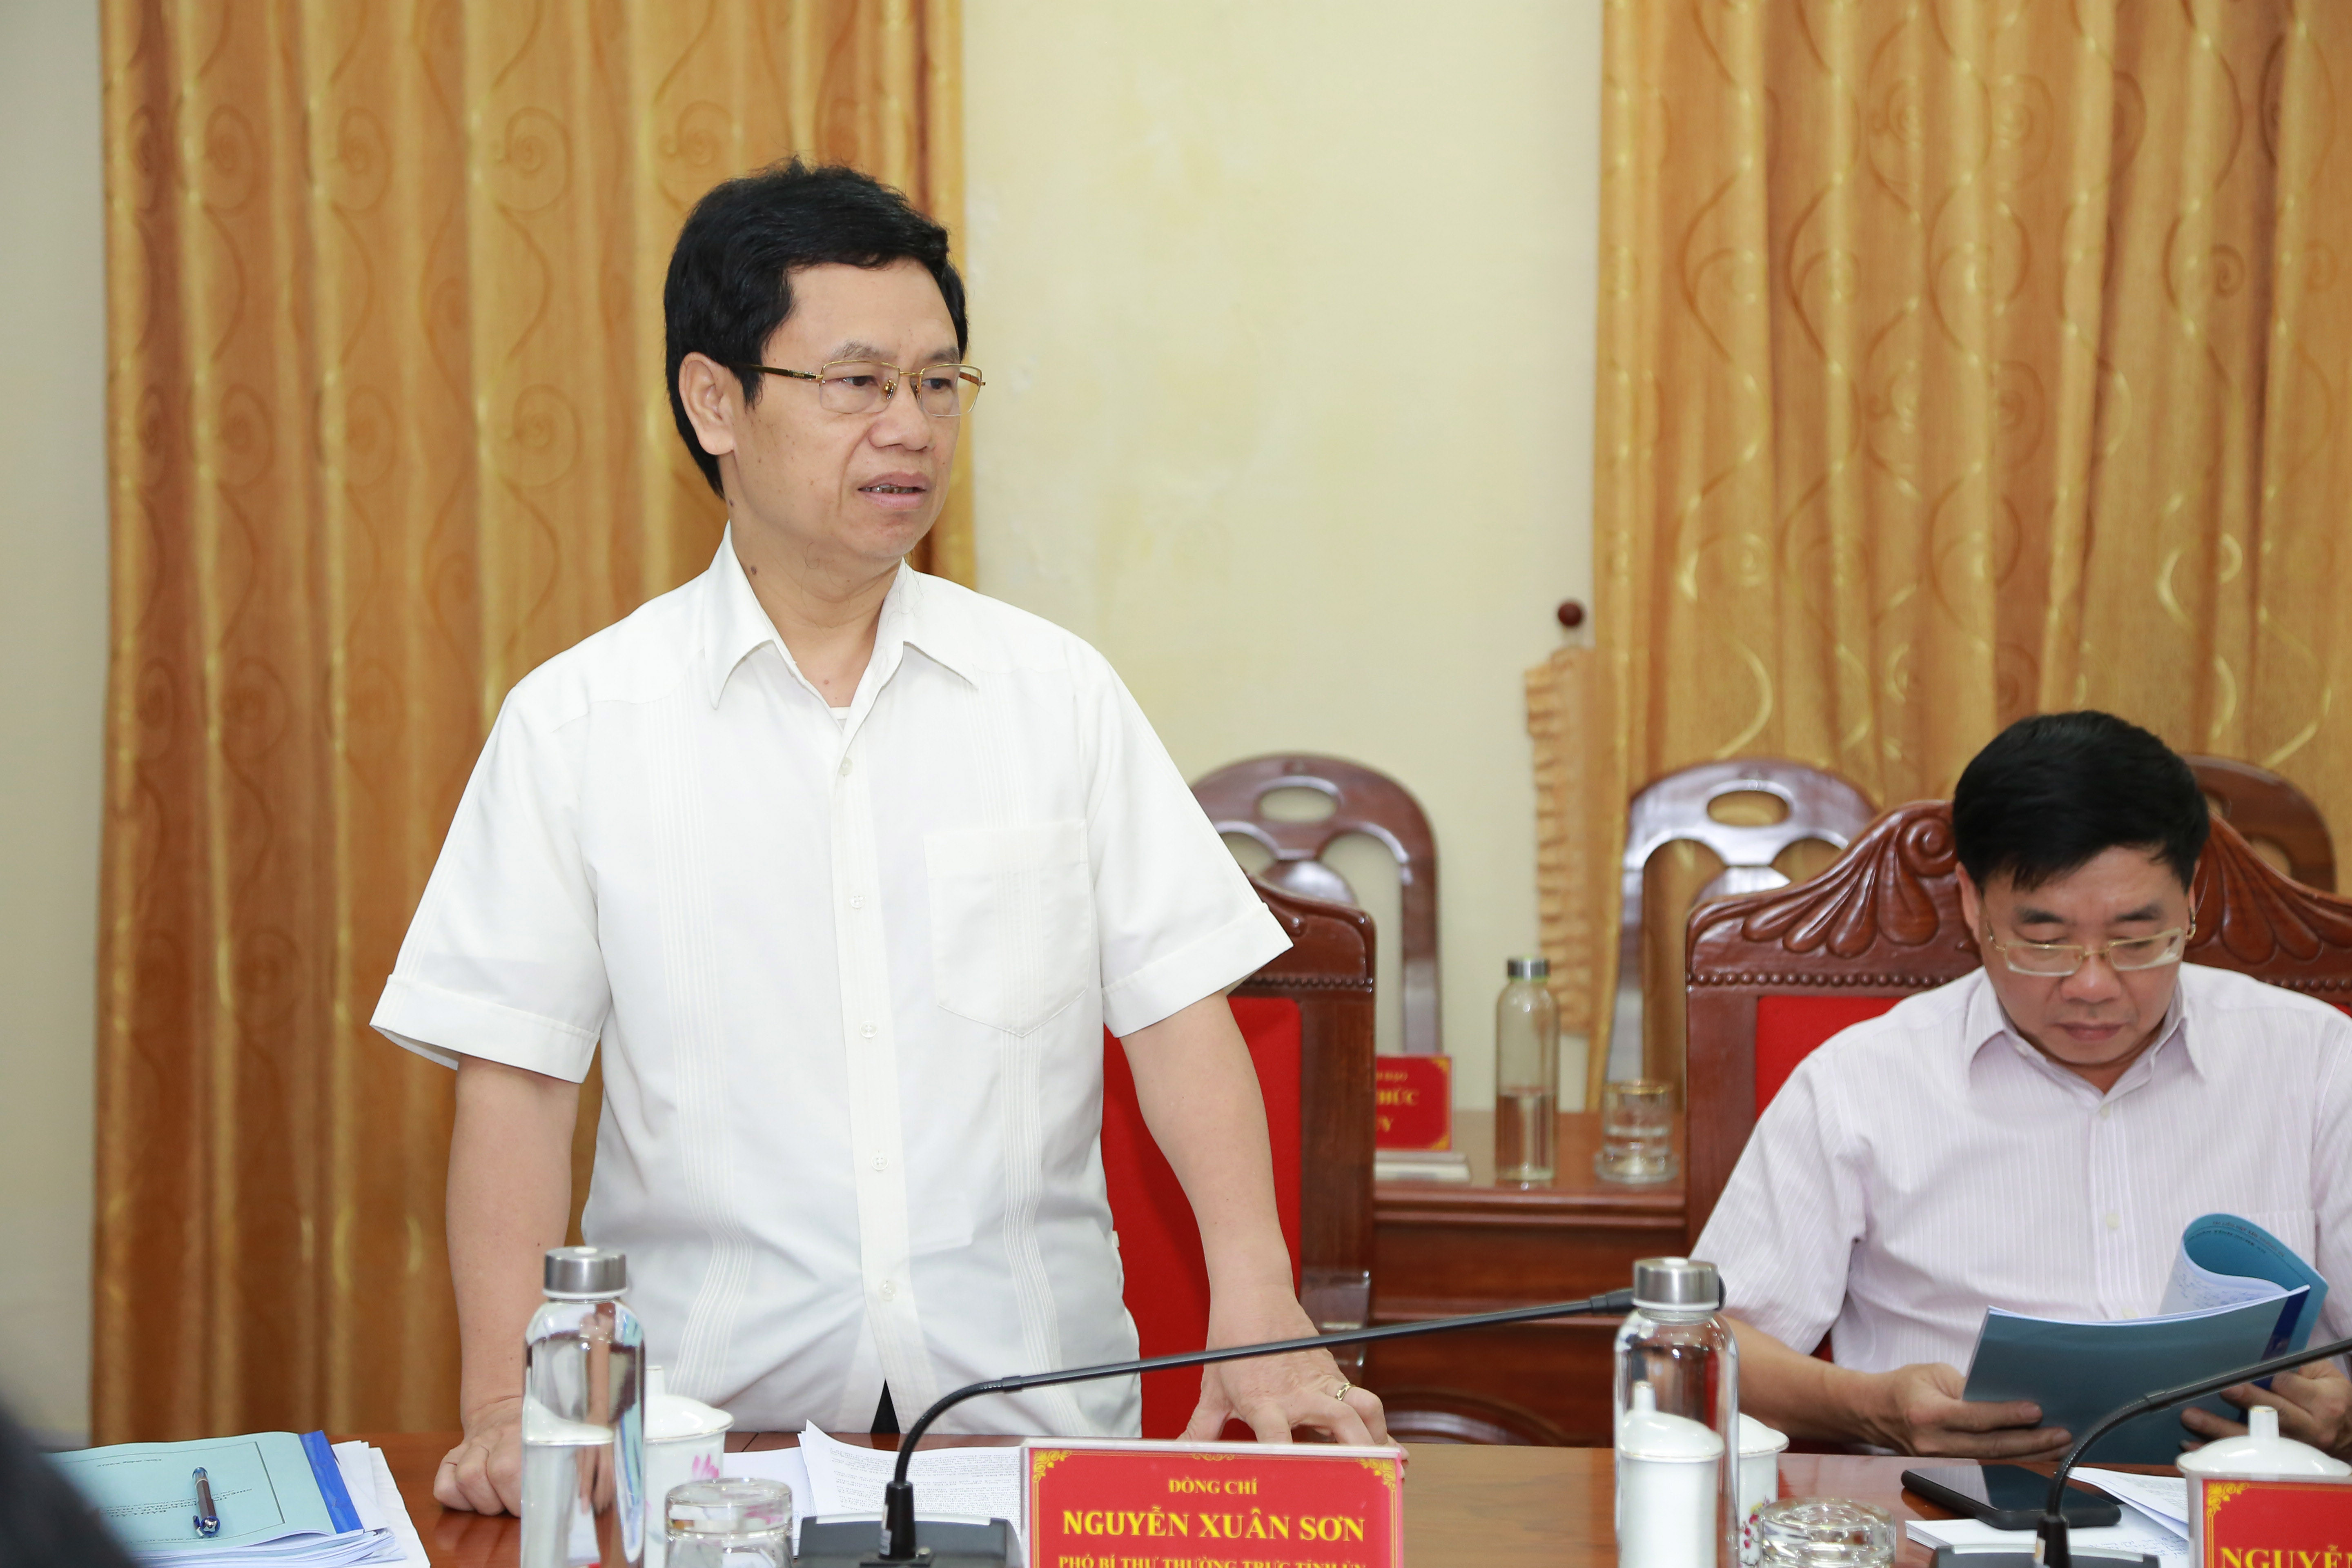 Phó Bí thư Thường trực Tỉnh ủy Nguyễn Xuân Sơn phát biểu tại buổi cuộc họp. Ảnh: Đào Tuấn